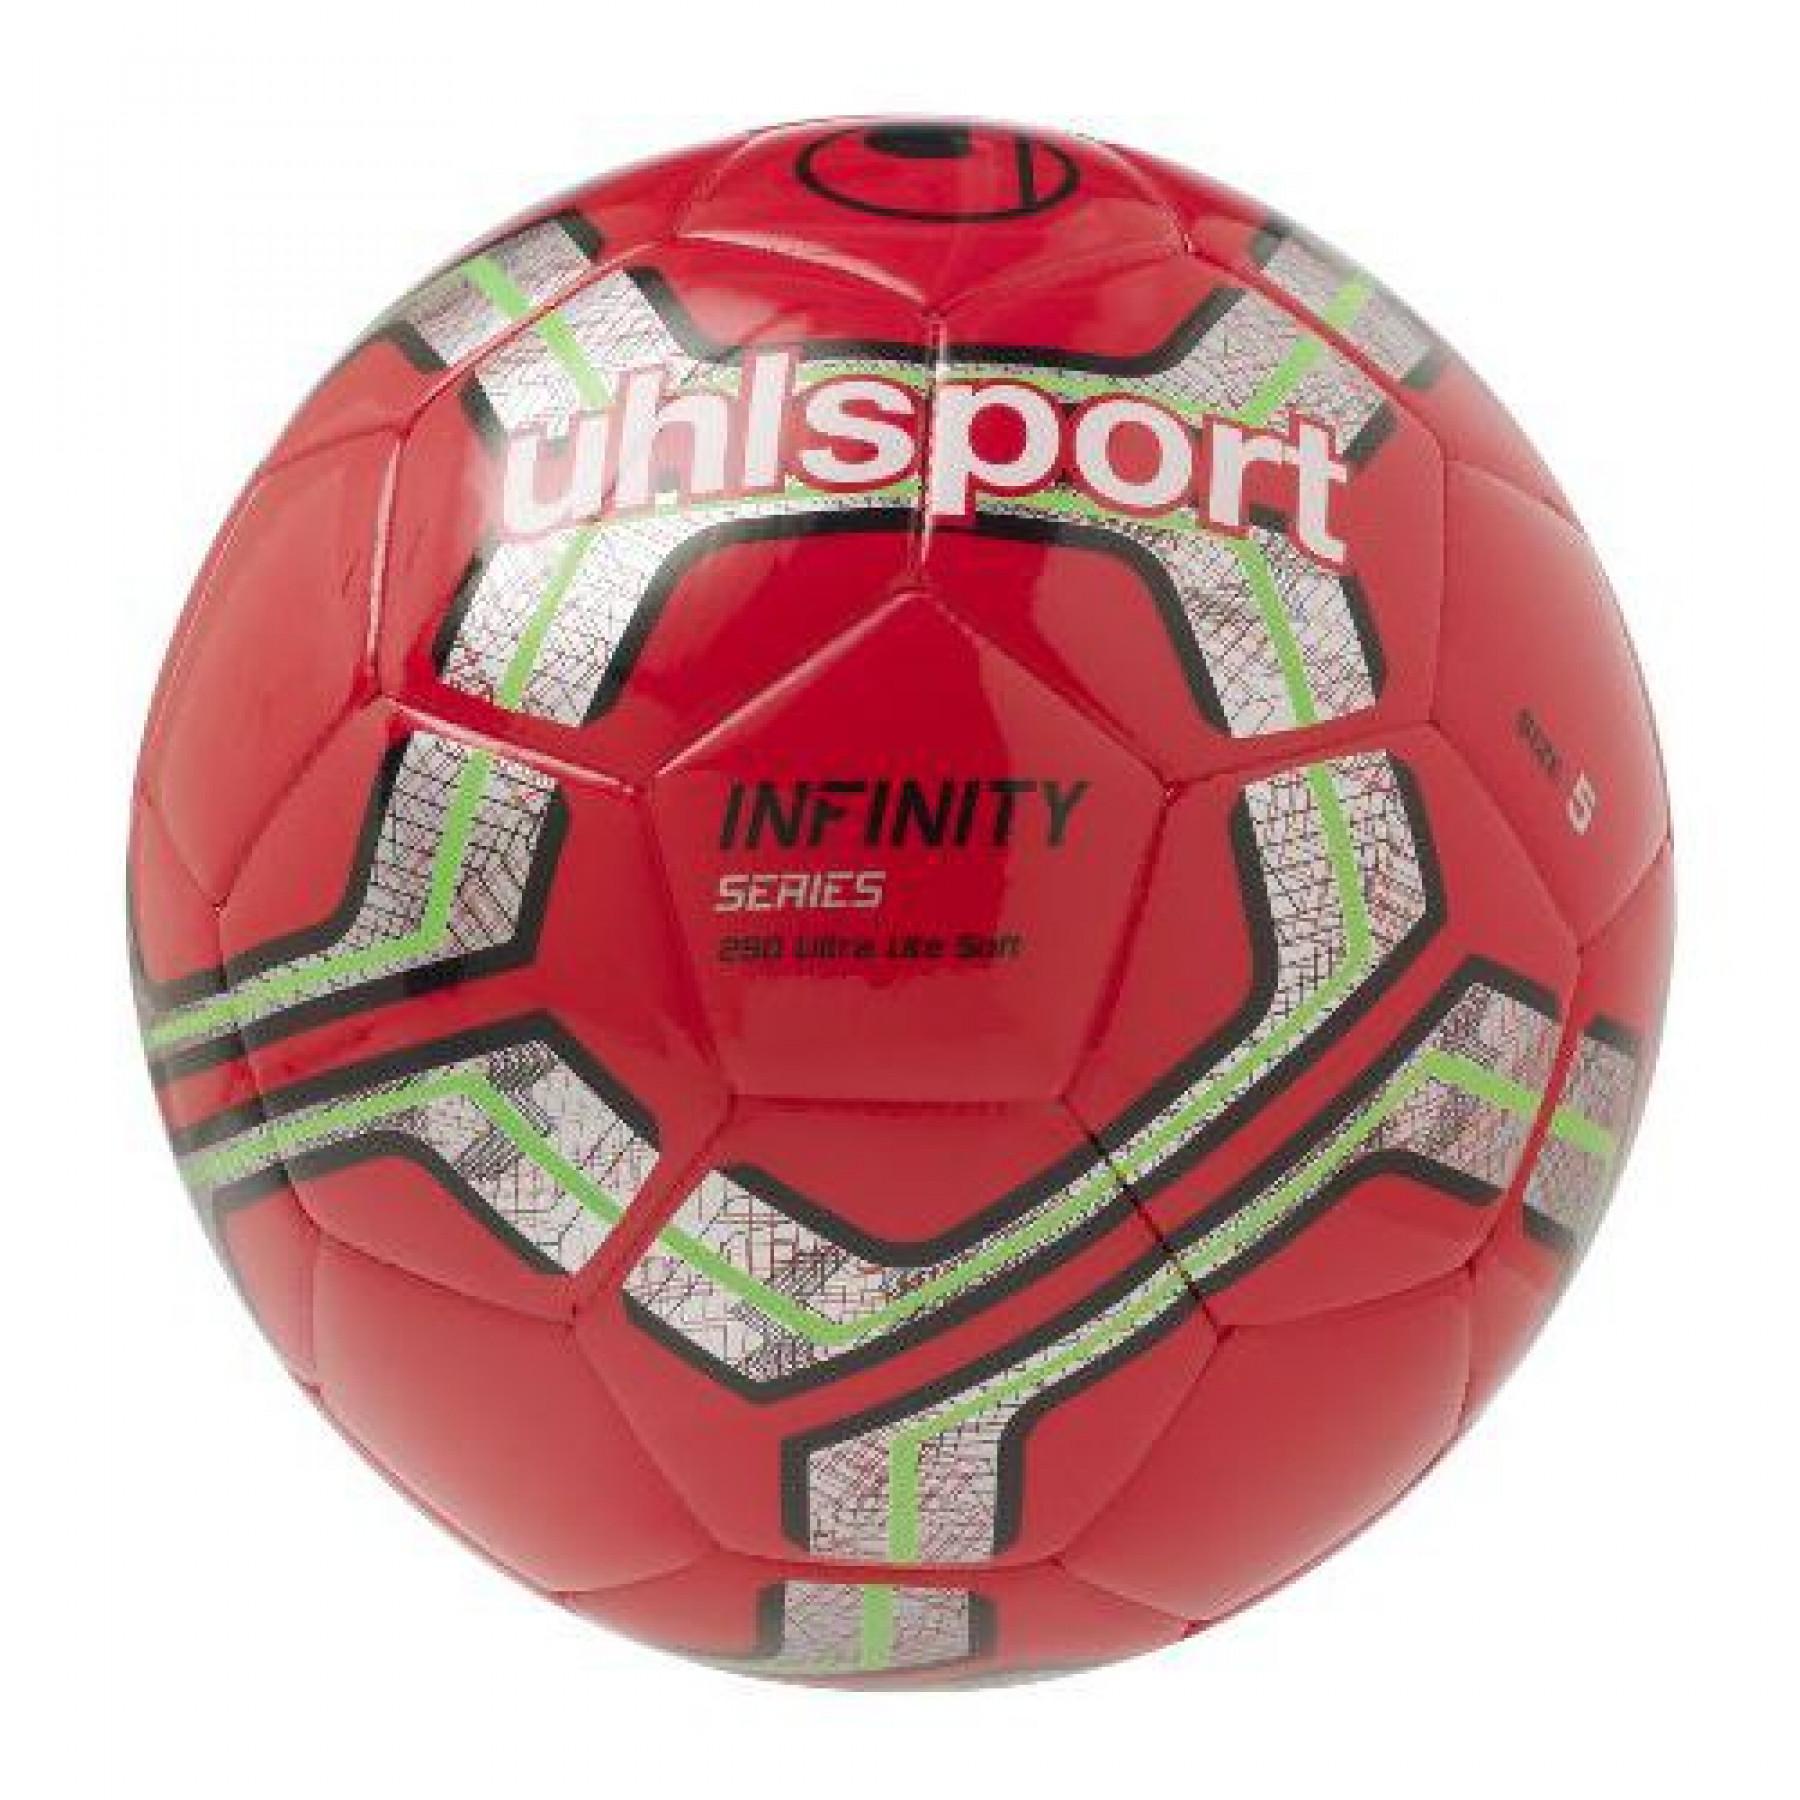 Balão Uhlsport Infinity 290 Ultra Lite Soft